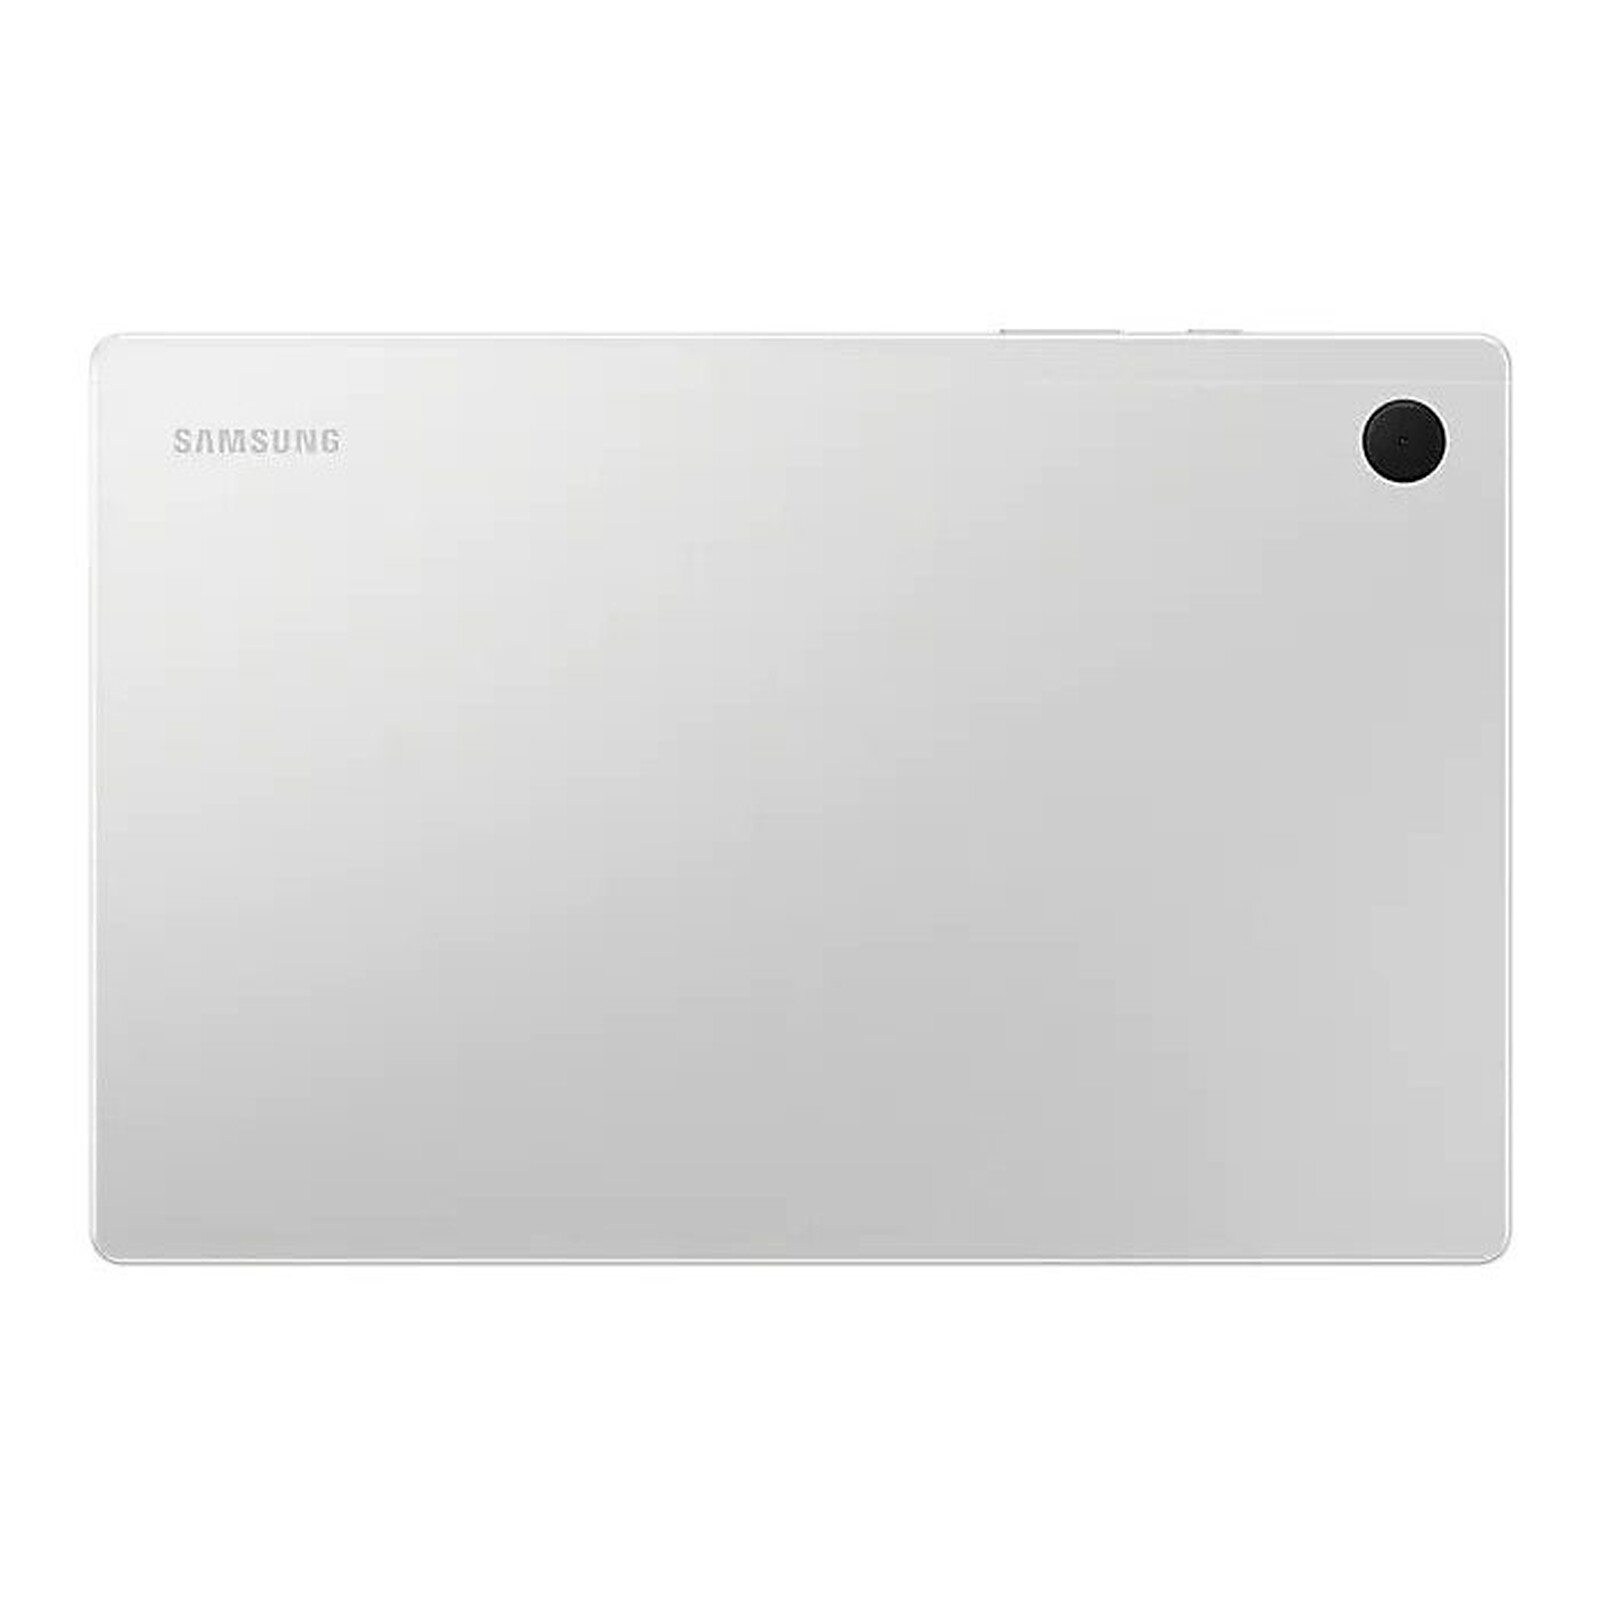 Generic pochette Tablette pour SAMSUNG GALAXY A7 Lite - Noir à prix pas  cher